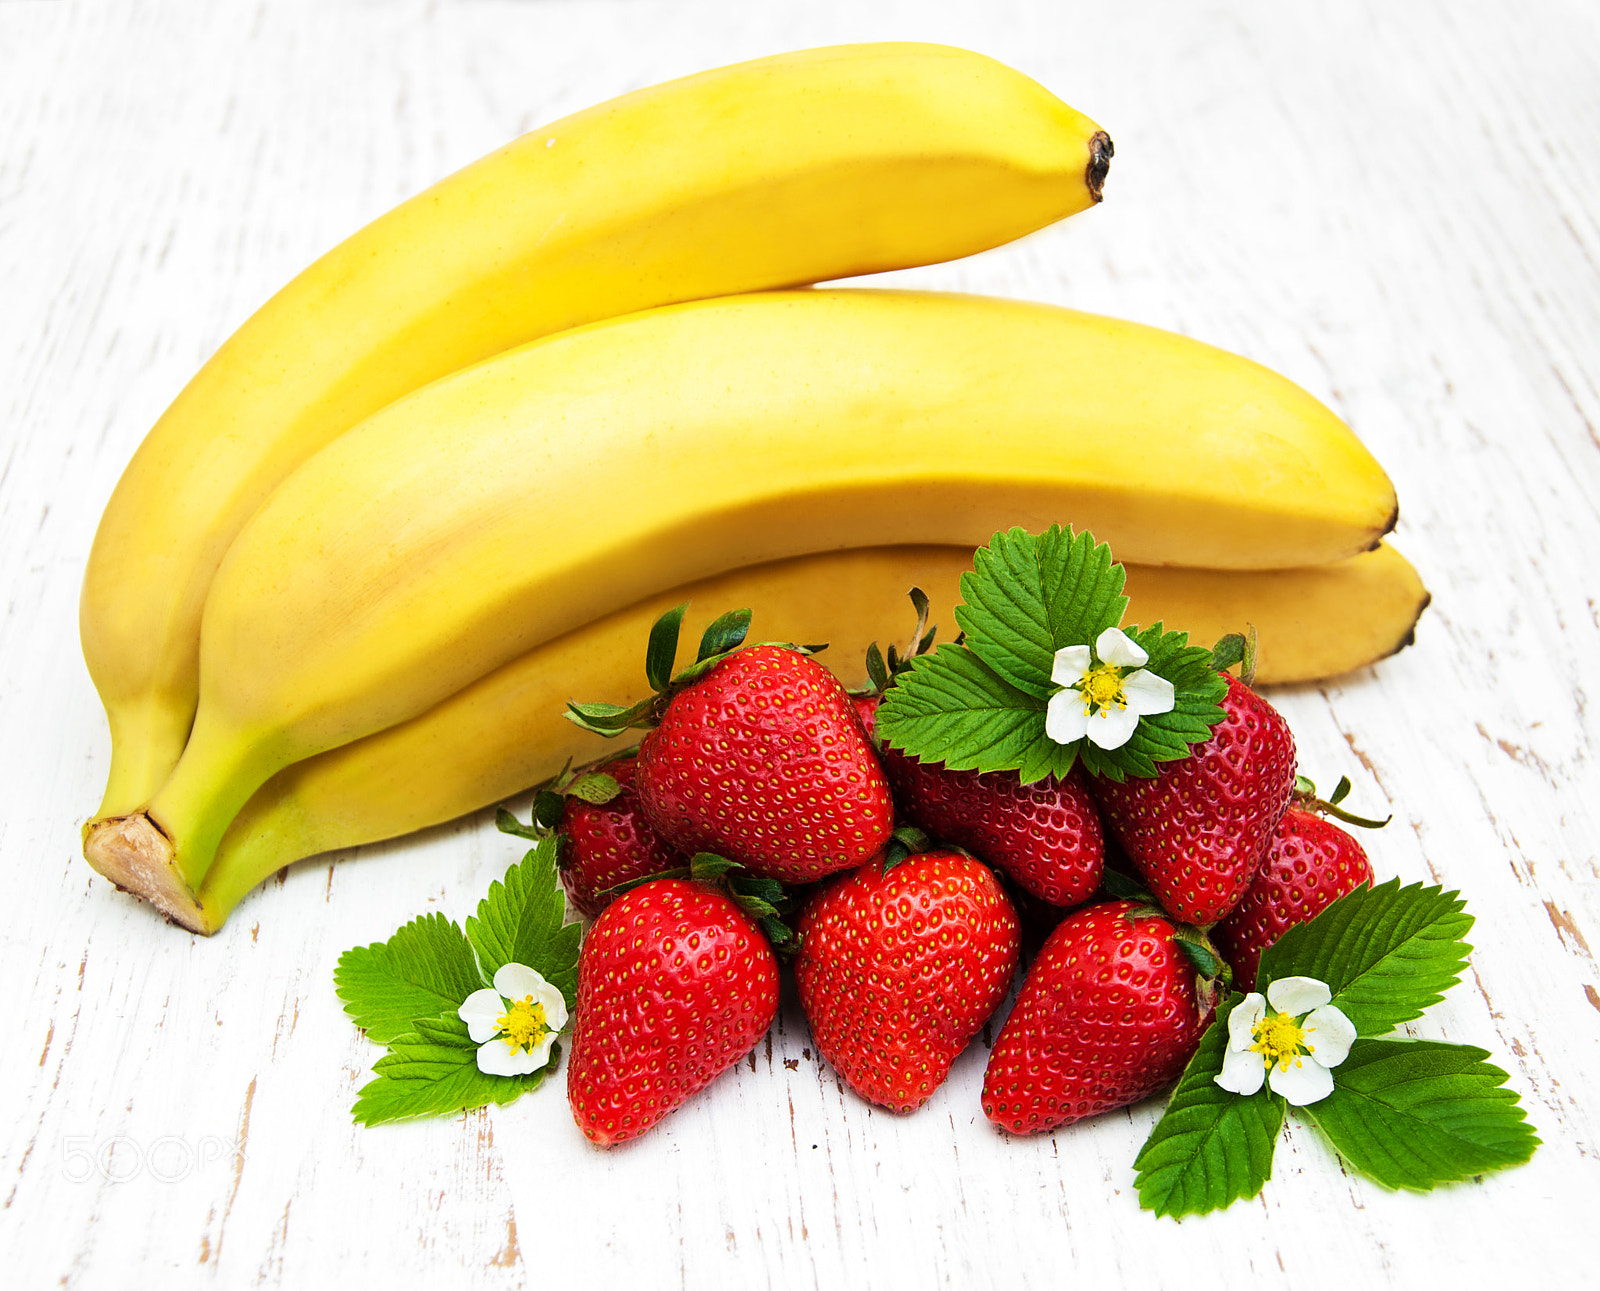 Nikon D90 sample photo. Bananas and strawberries photography